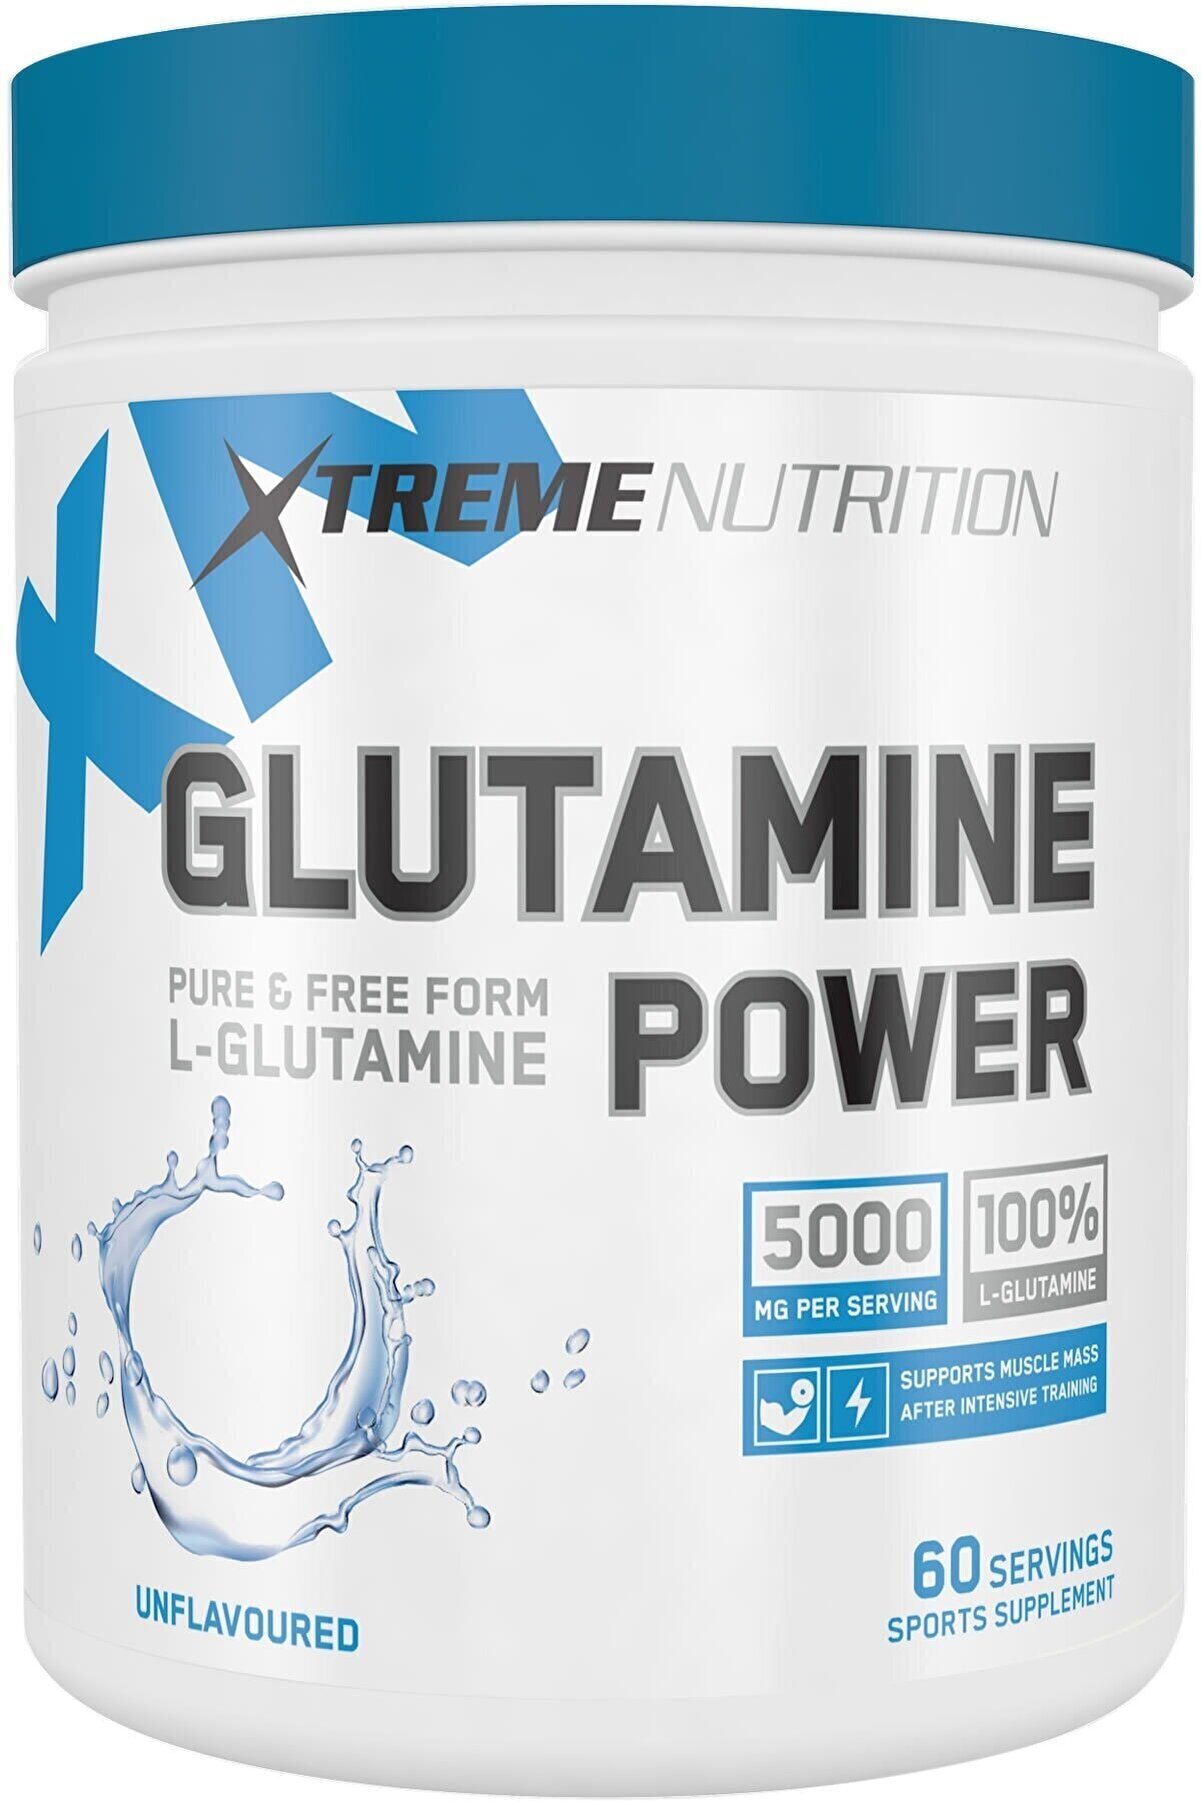 Xtreme Nutrition Glutamine Power 300 gr